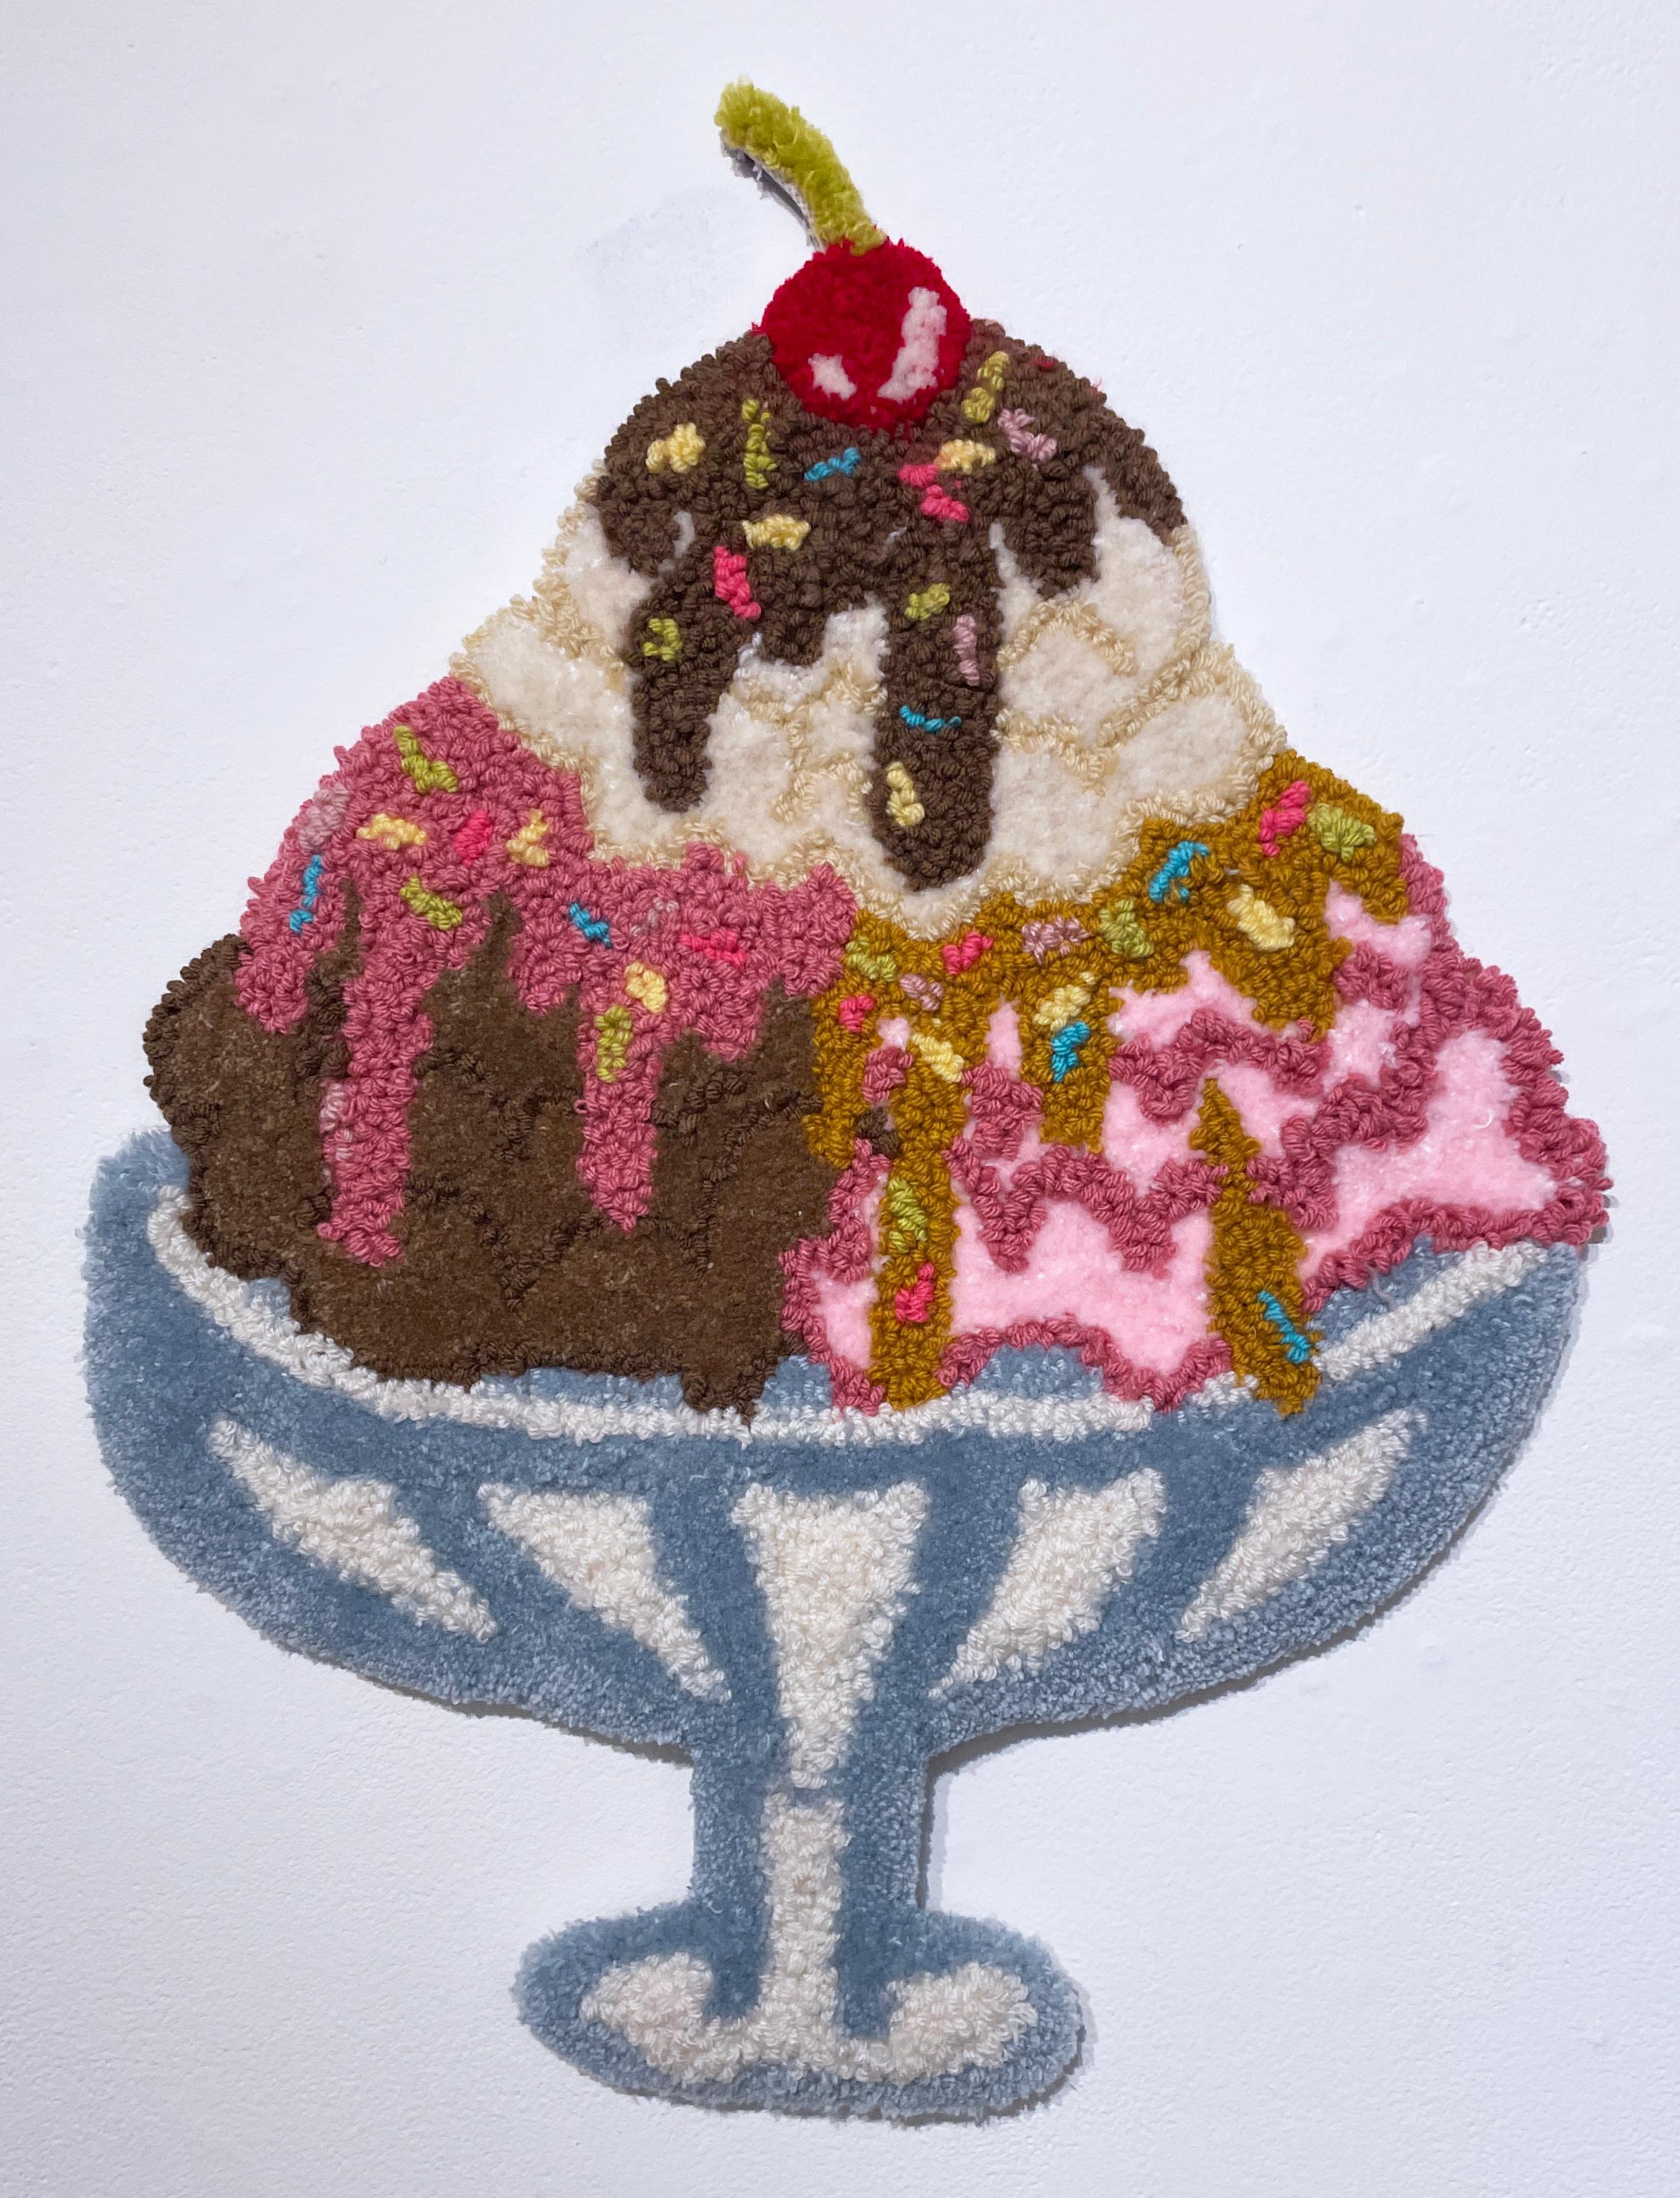 Publicité : Crème glacée (20232), art mural touffeté, textile, fibre, fil, rose